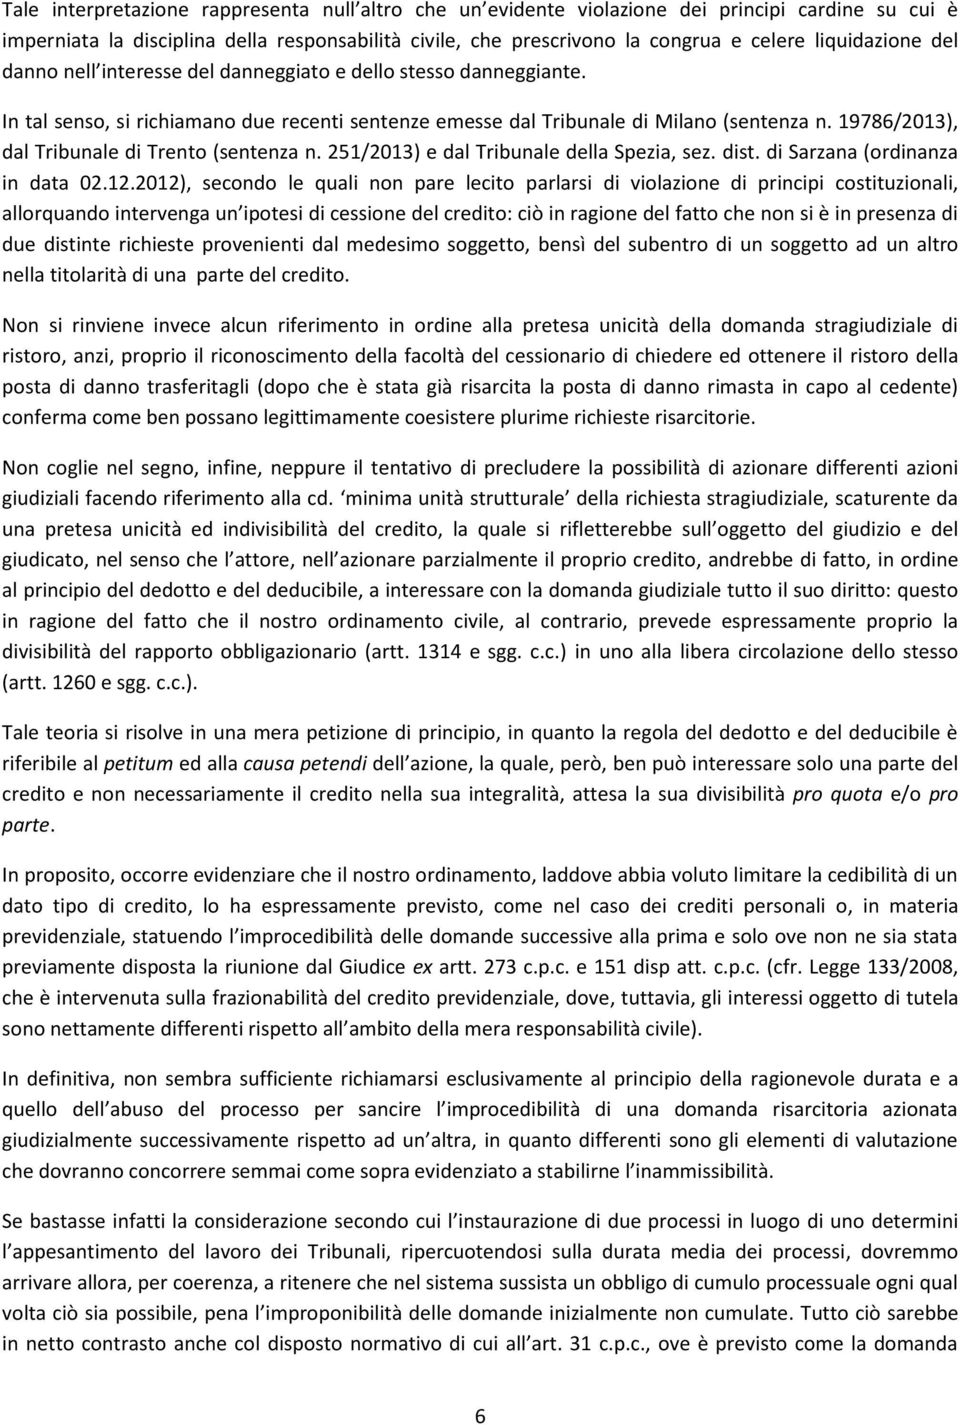 19786/2013), dal Tribunale di Trento (sentenza n. 251/2013) e dal Tribunale della Spezia, sez. dist. di Sarzana (ordinanza in data 02.12.